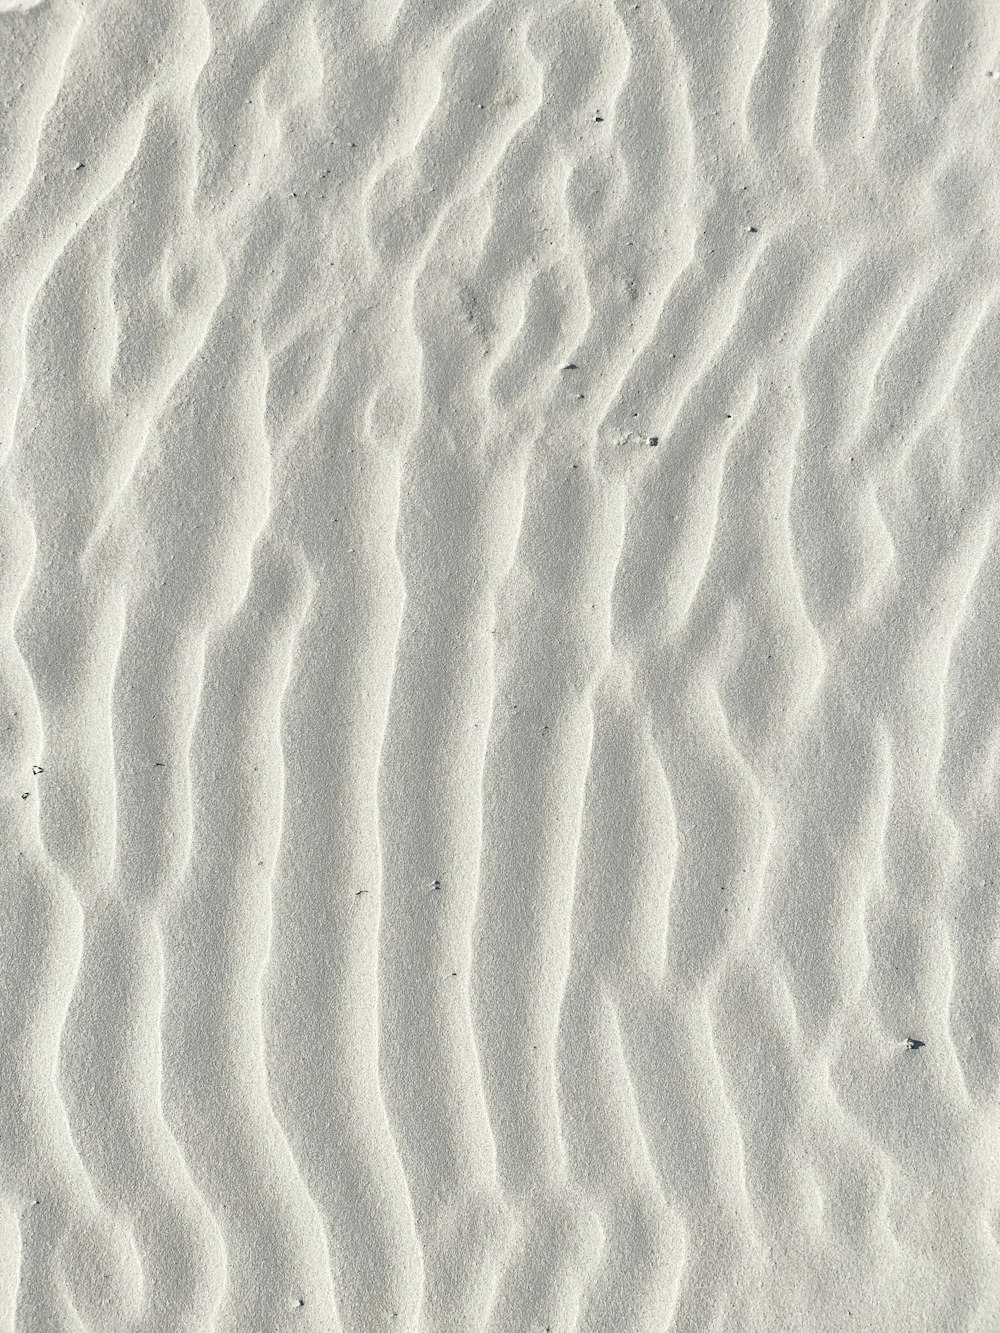 白い砂のマクロ撮影